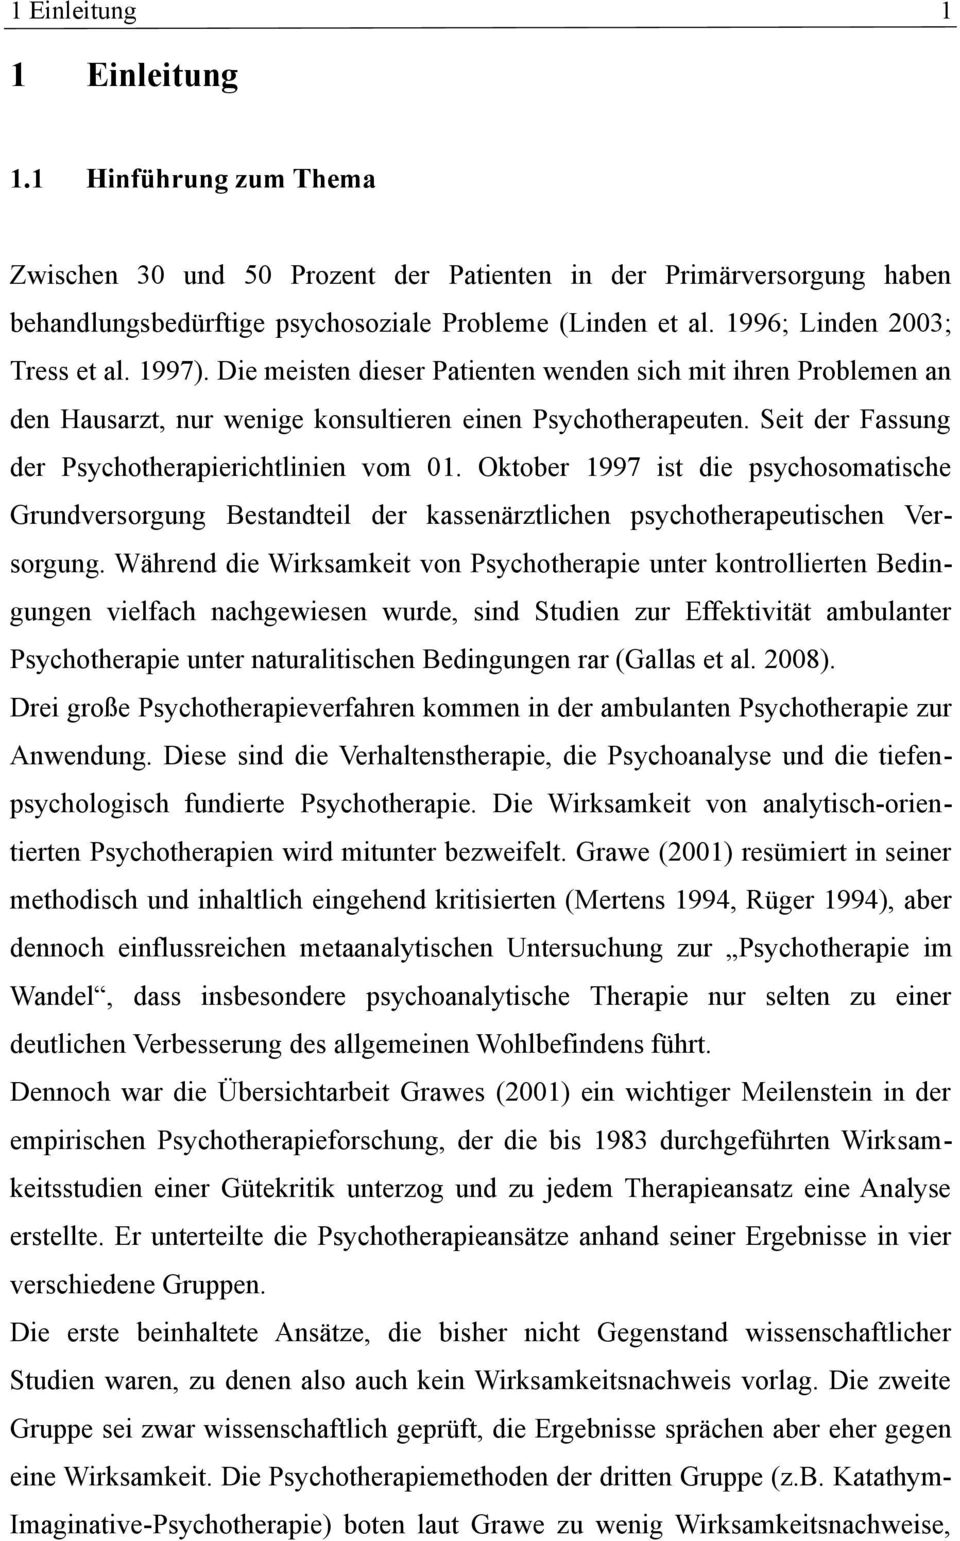 Seit der Fassung der Psychotherapierichtlinien vom 01. Oktober 1997 ist die psychosomatische Grundversorgung Bestandteil der kassenärztlichen psychotherapeutischen Versorgung.